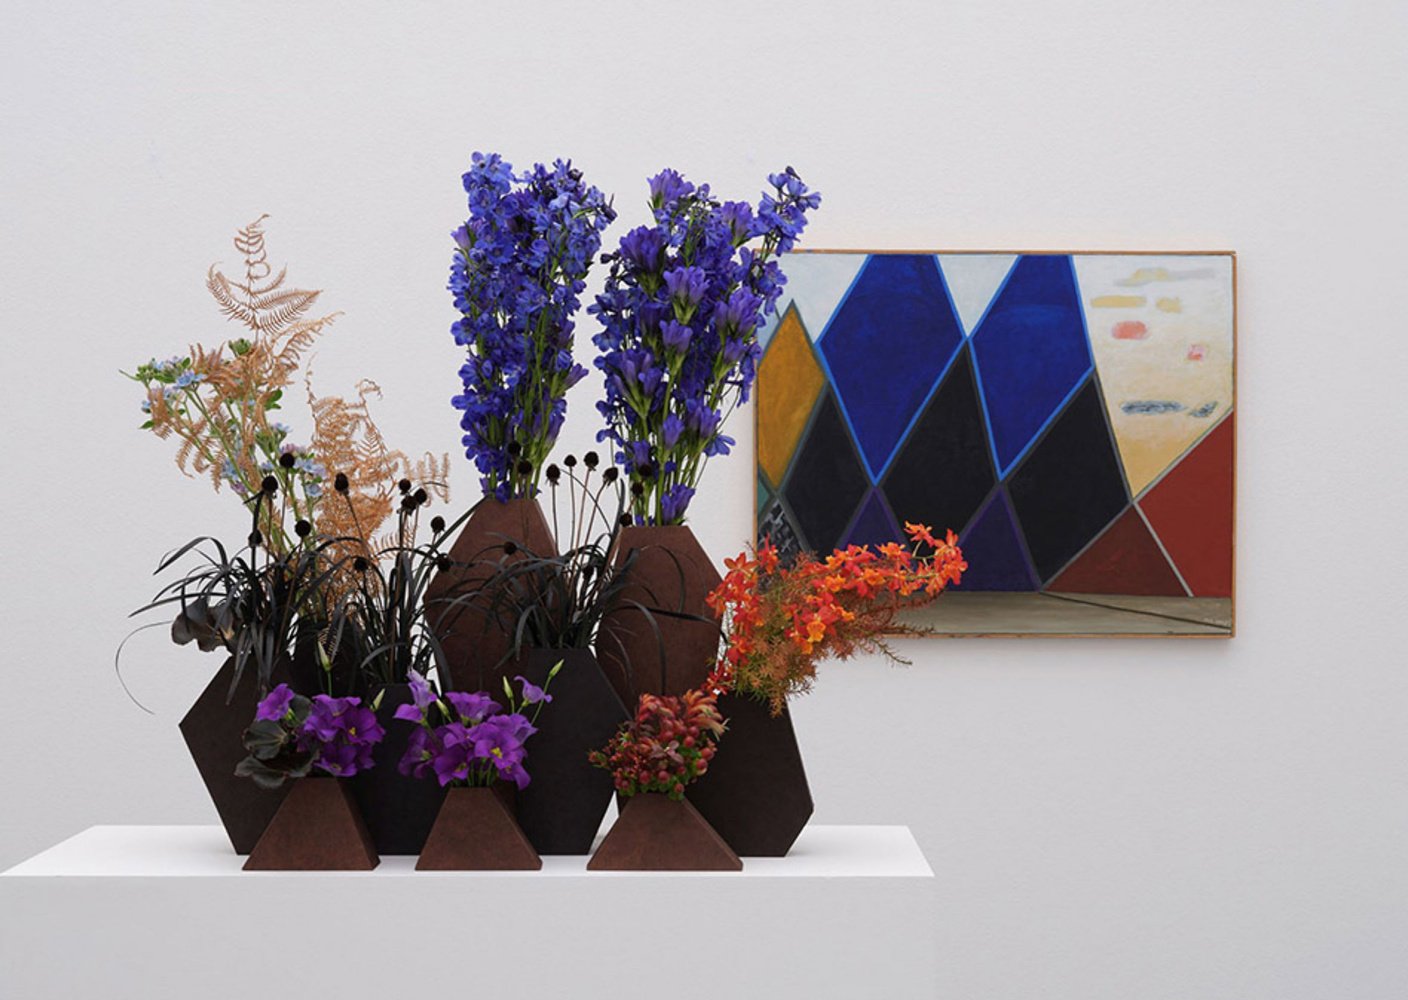 "Цветы для искусства": творческий эксперимент флористов и музейщиков